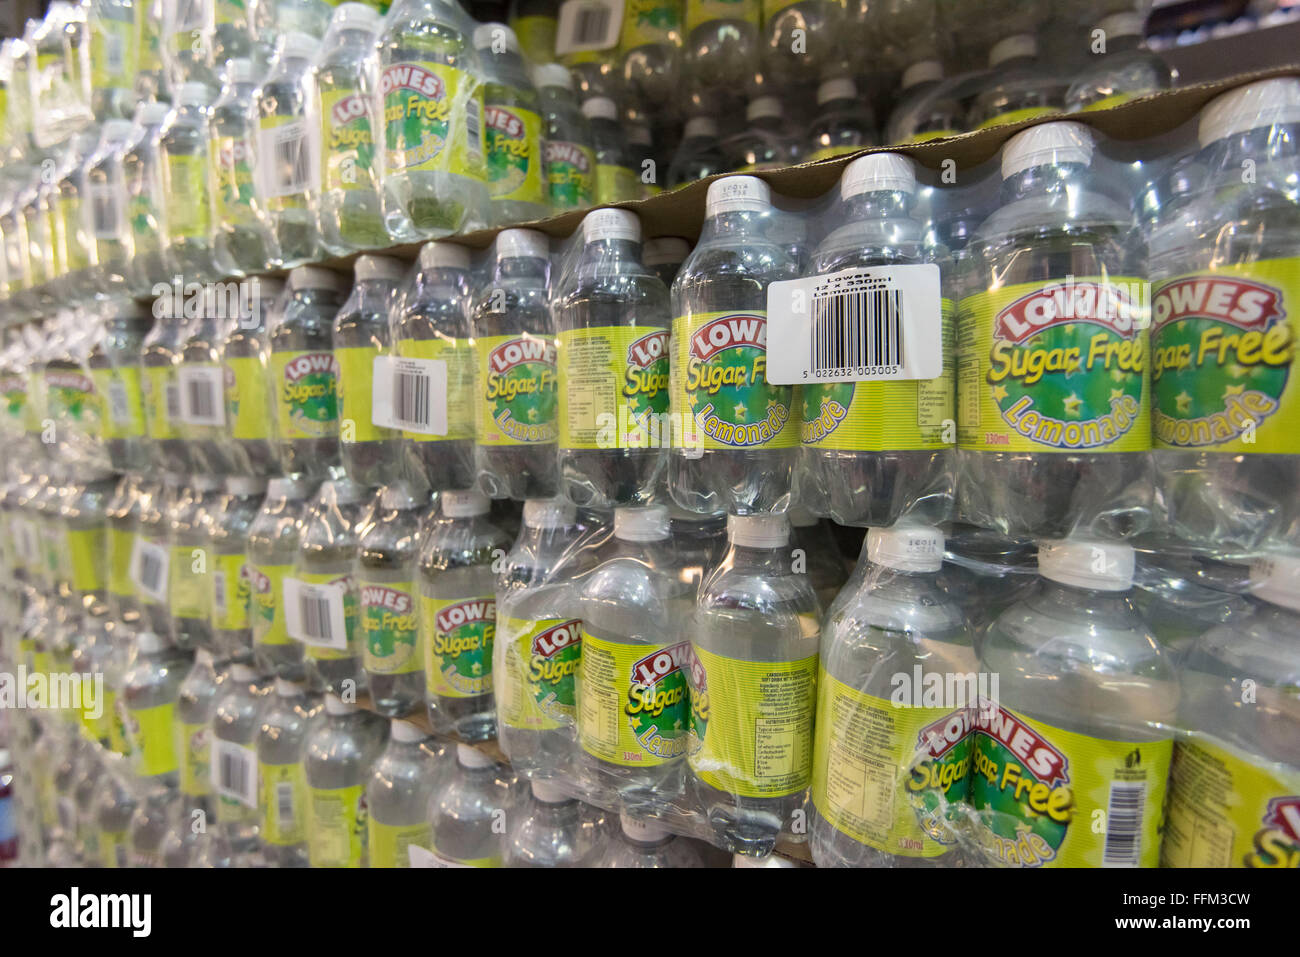 Bouteilles de Lowes limonade sans sucre boisson non enveloppées dans du cellophane et empilées dans un entrepôt. Banque D'Images